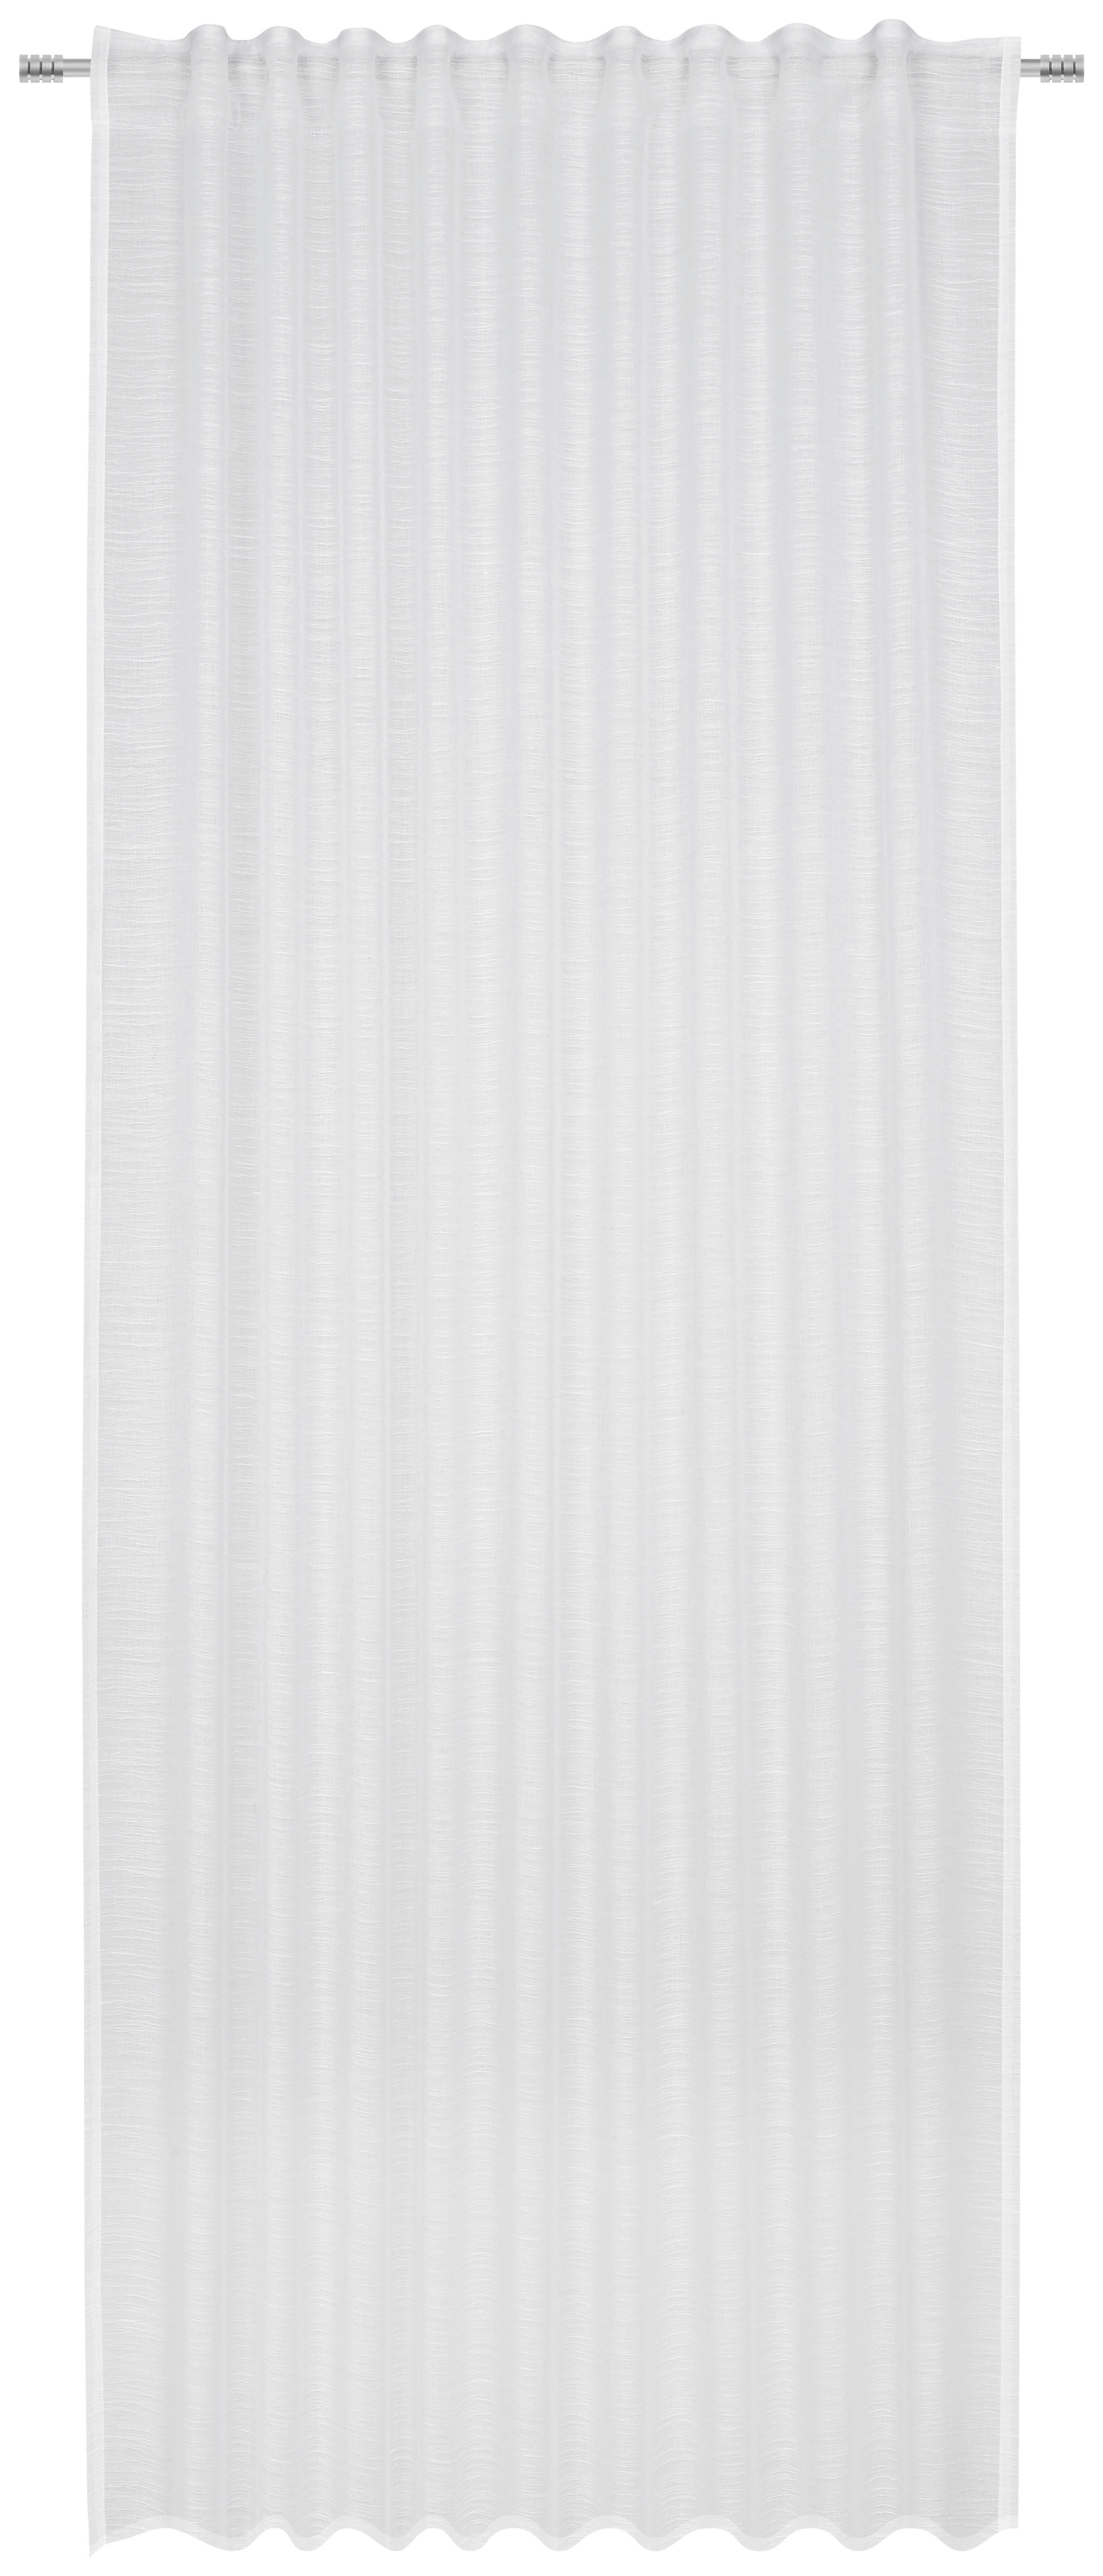 FERTIGVORHANG OSKAR halbtransparent 140/245 cm   - Weiß, Basics, Textil (140/245cm) - Esposa